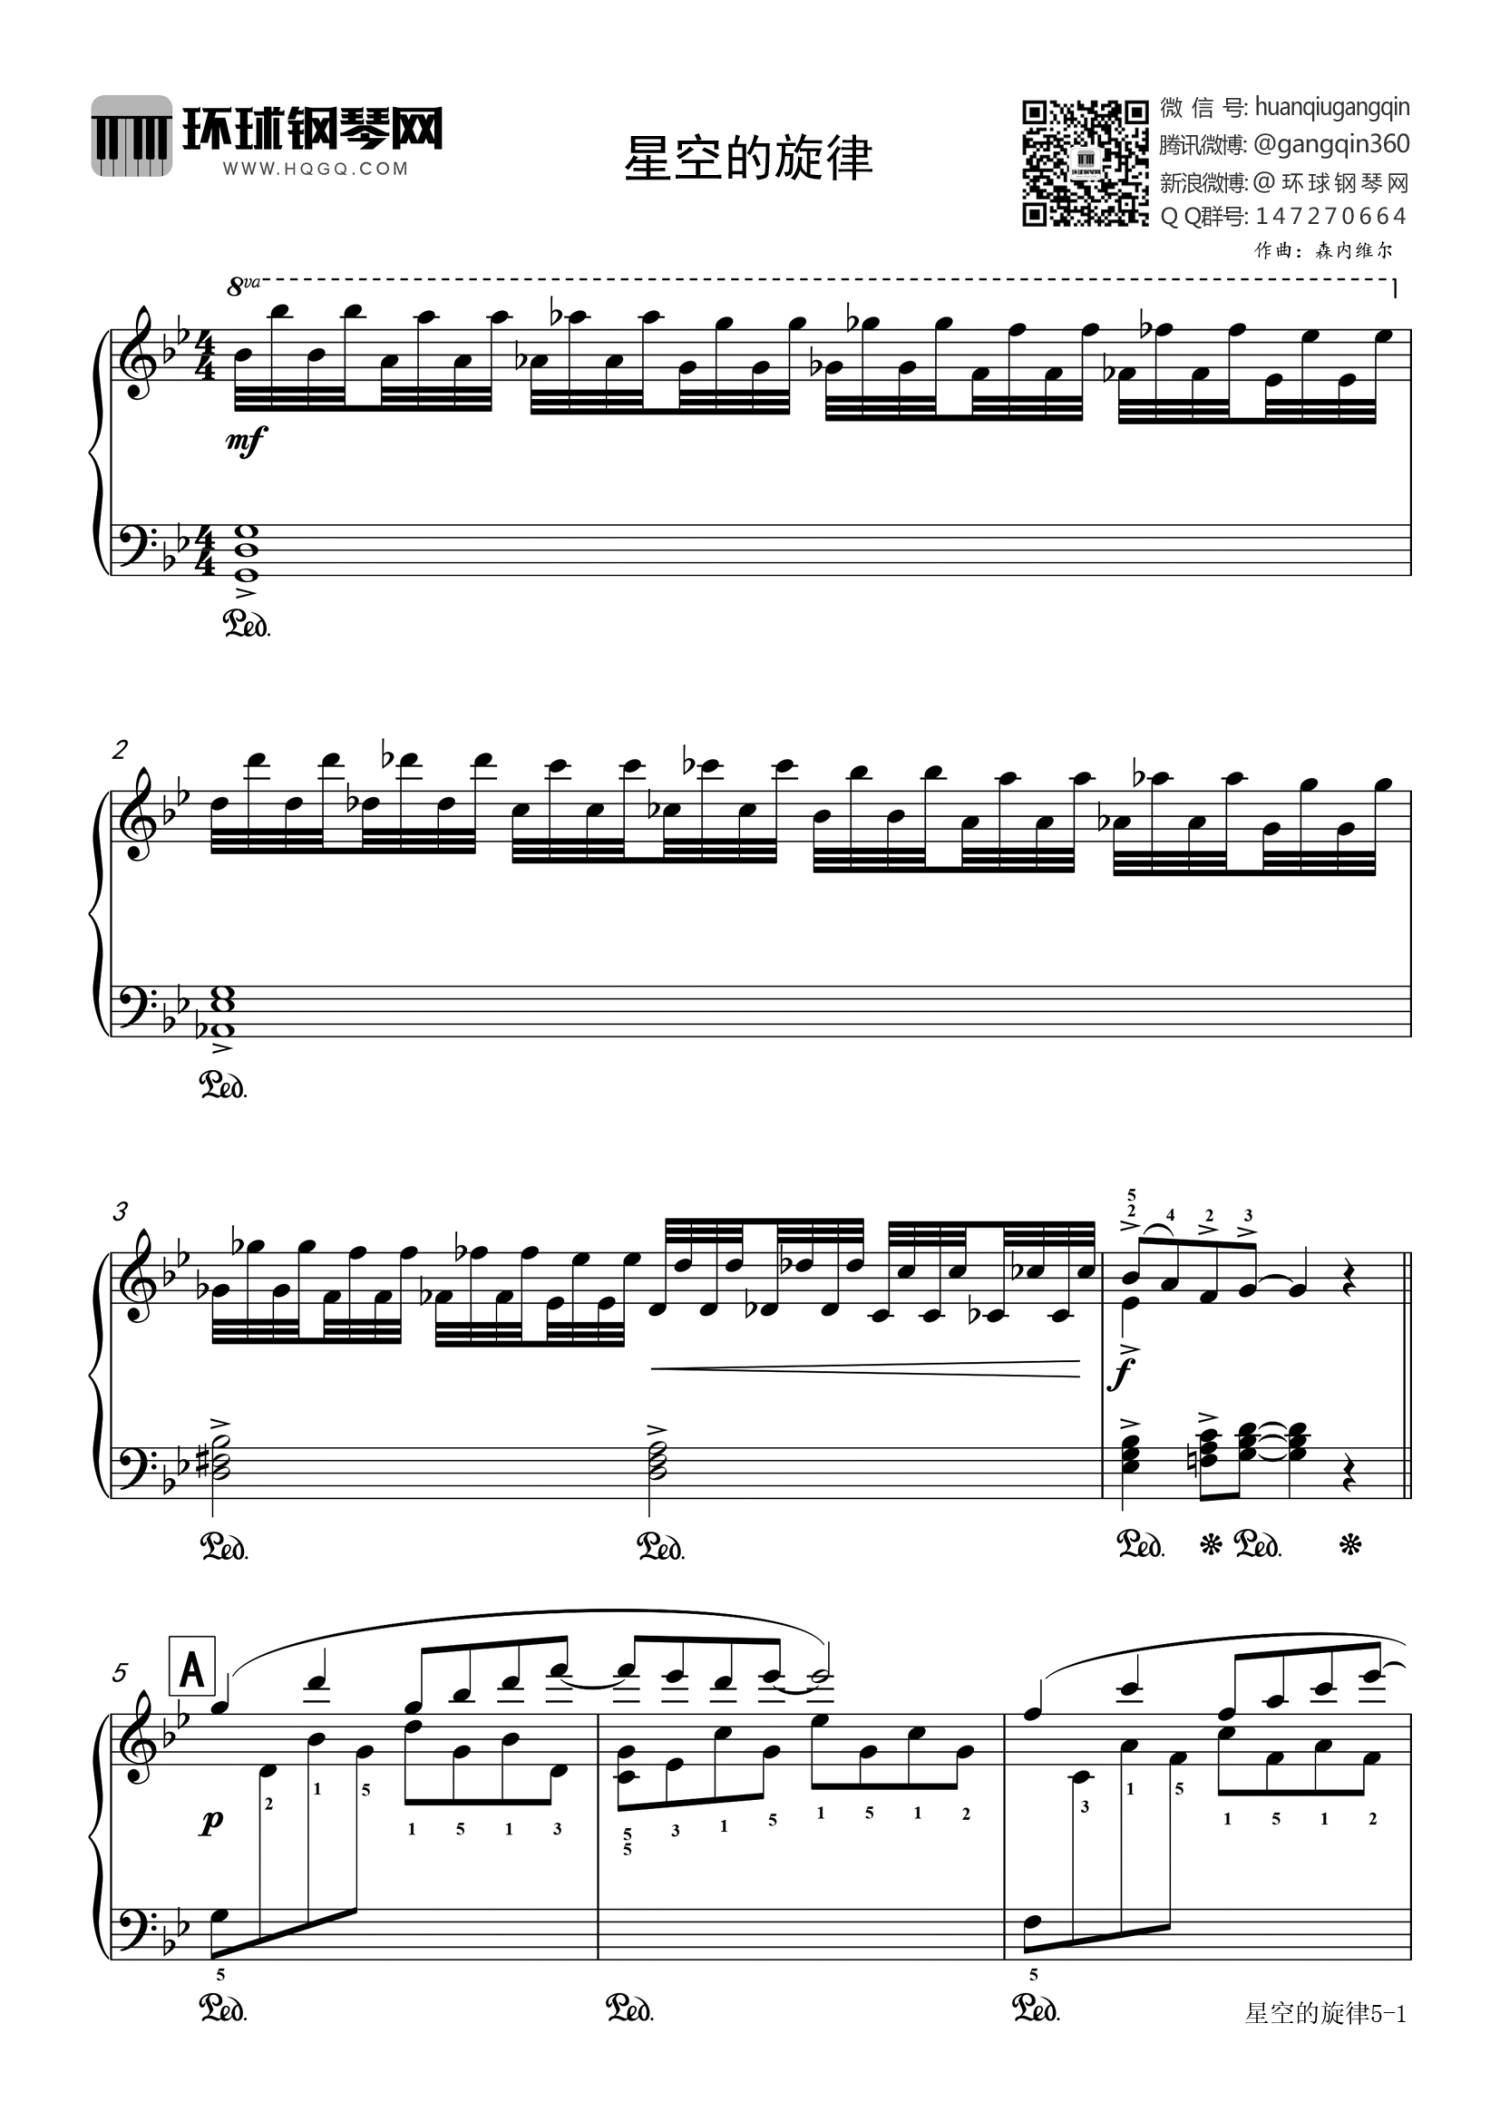 克莱德曼《星空的旋律》钢琴谱_完美版第1张